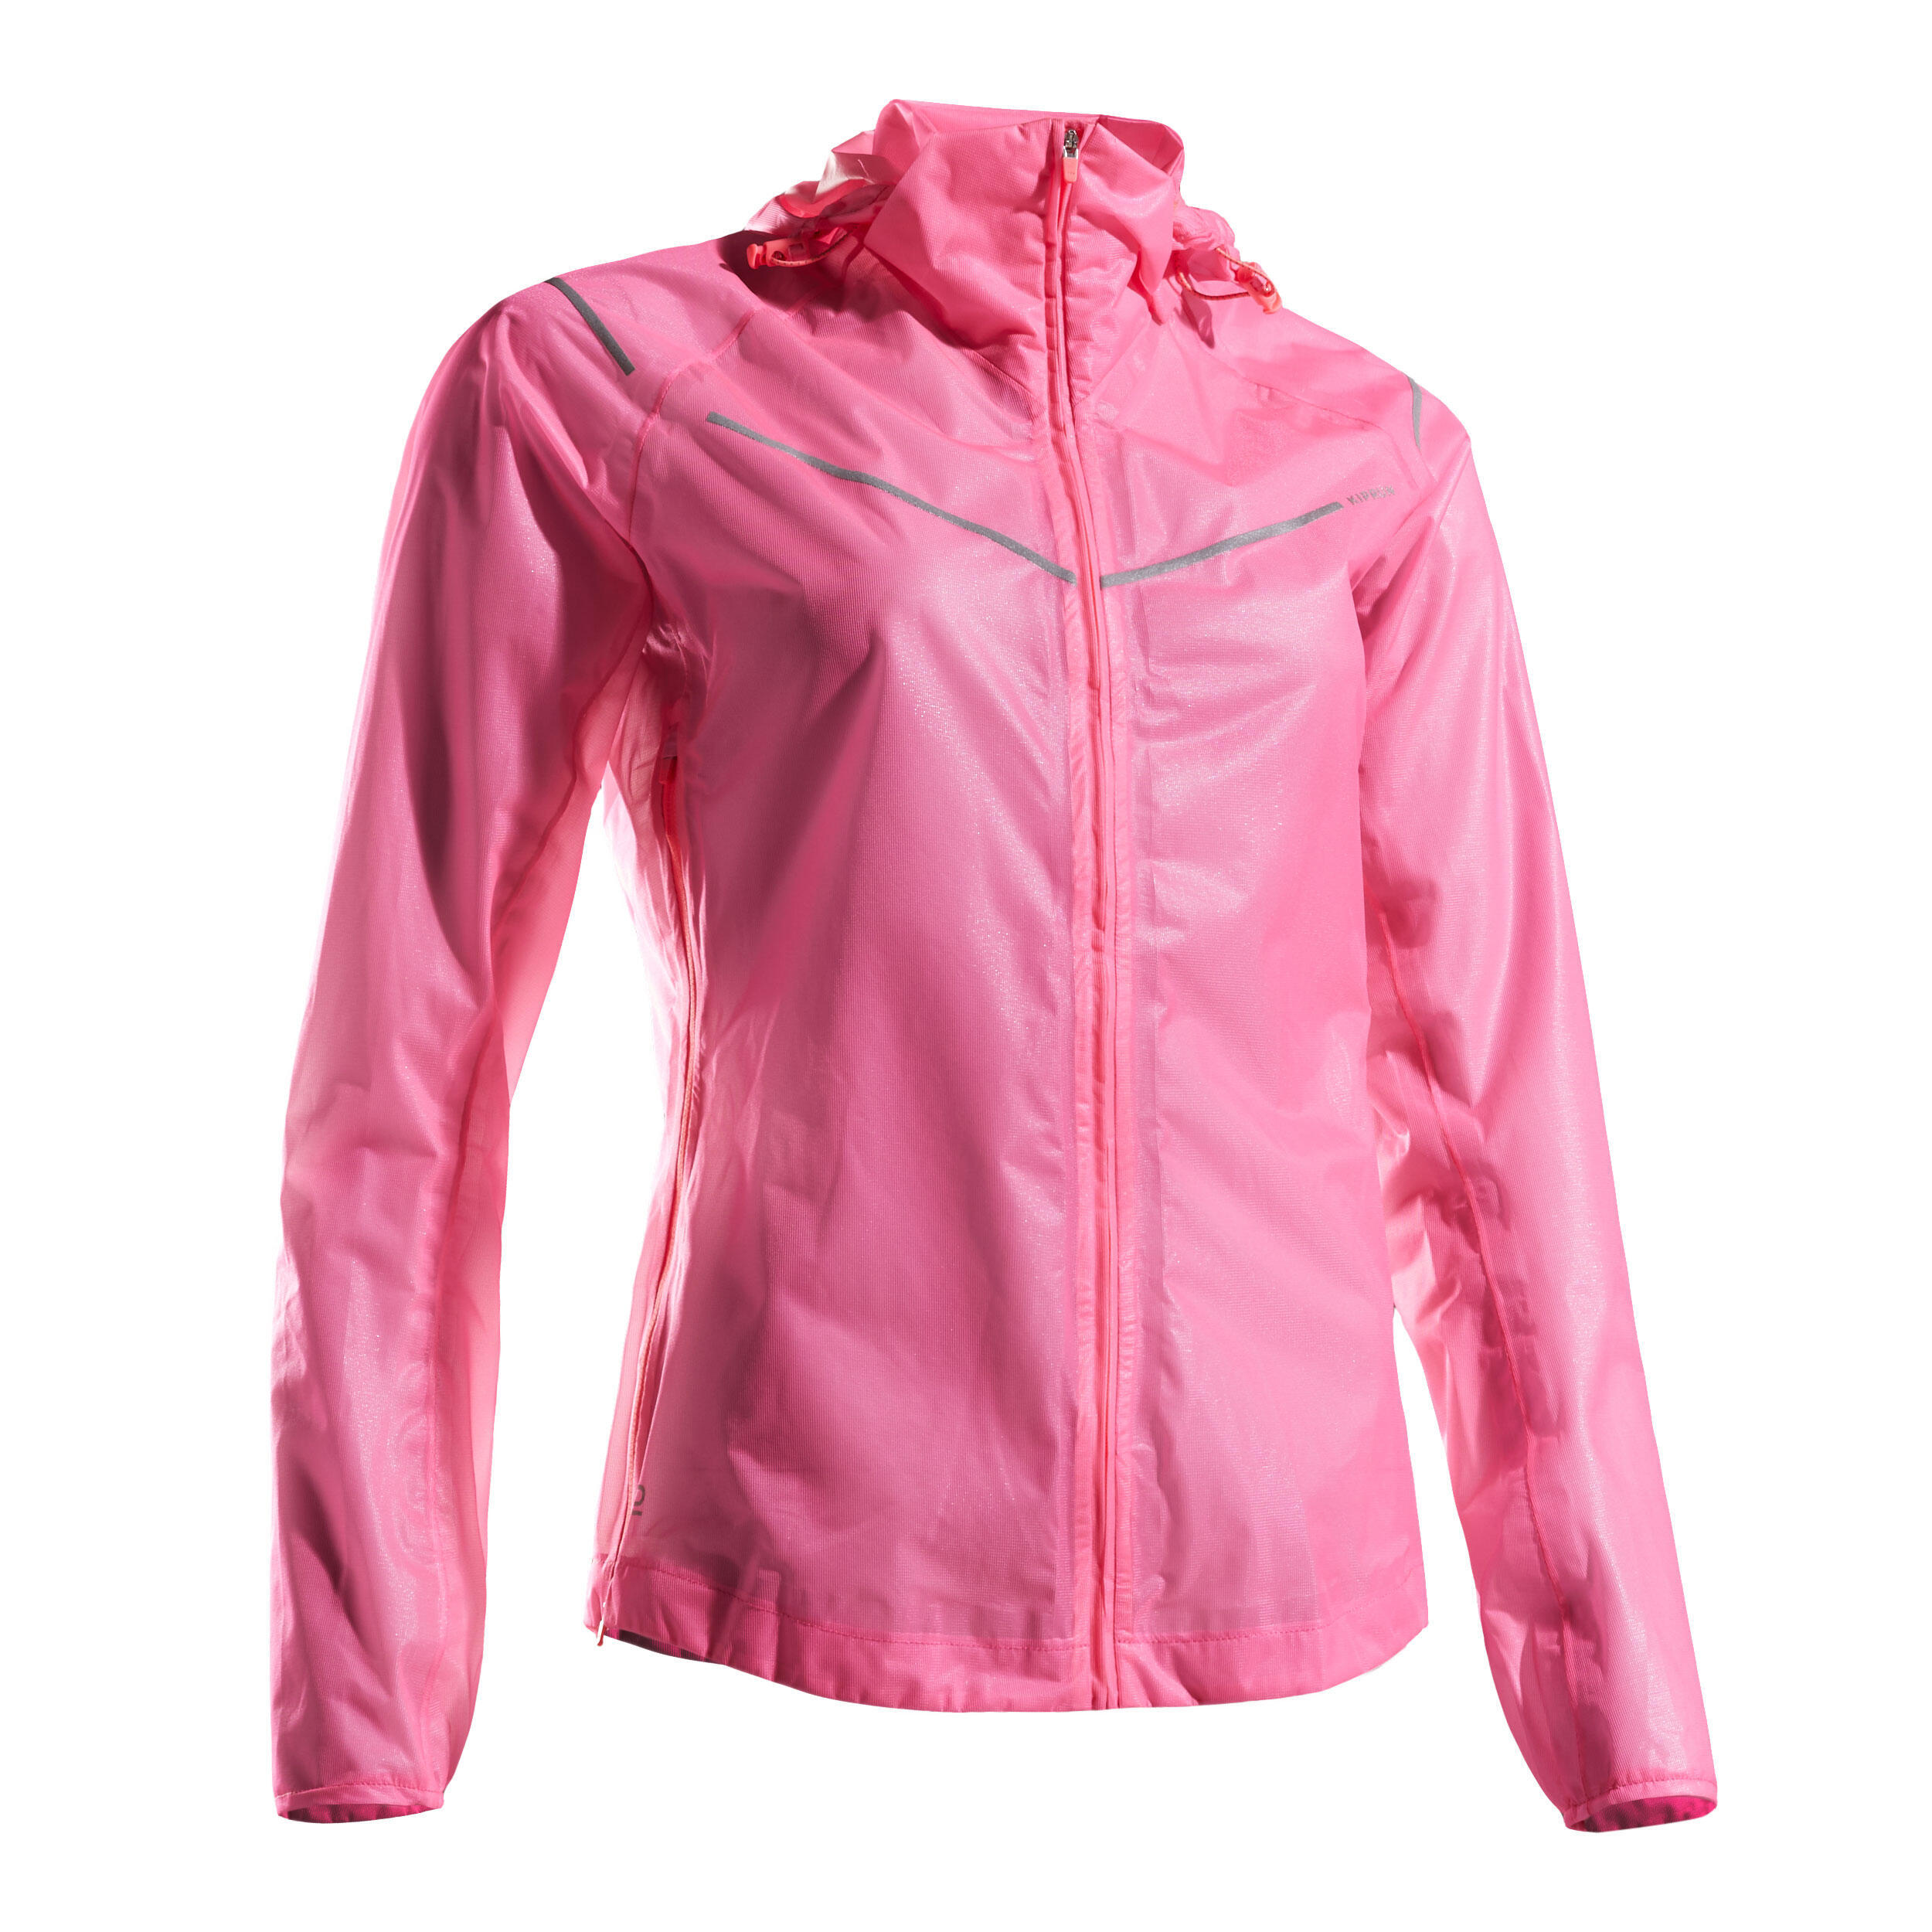 Light Women's Running Showerproof Jacket - Pink 9/9